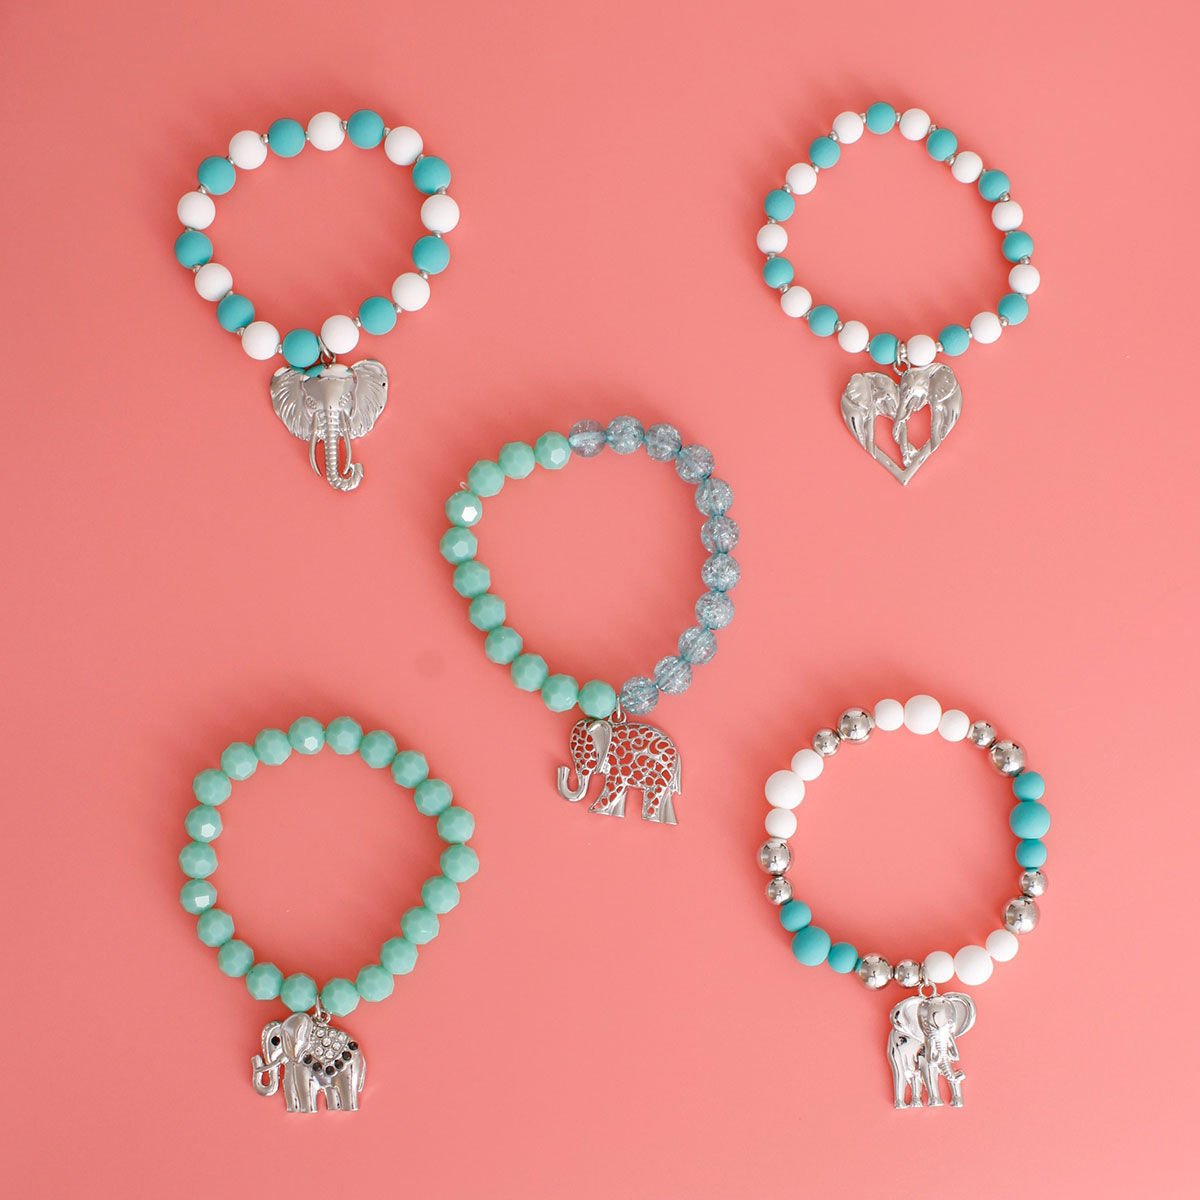 Mixed Turquoise Elephant Bracelets